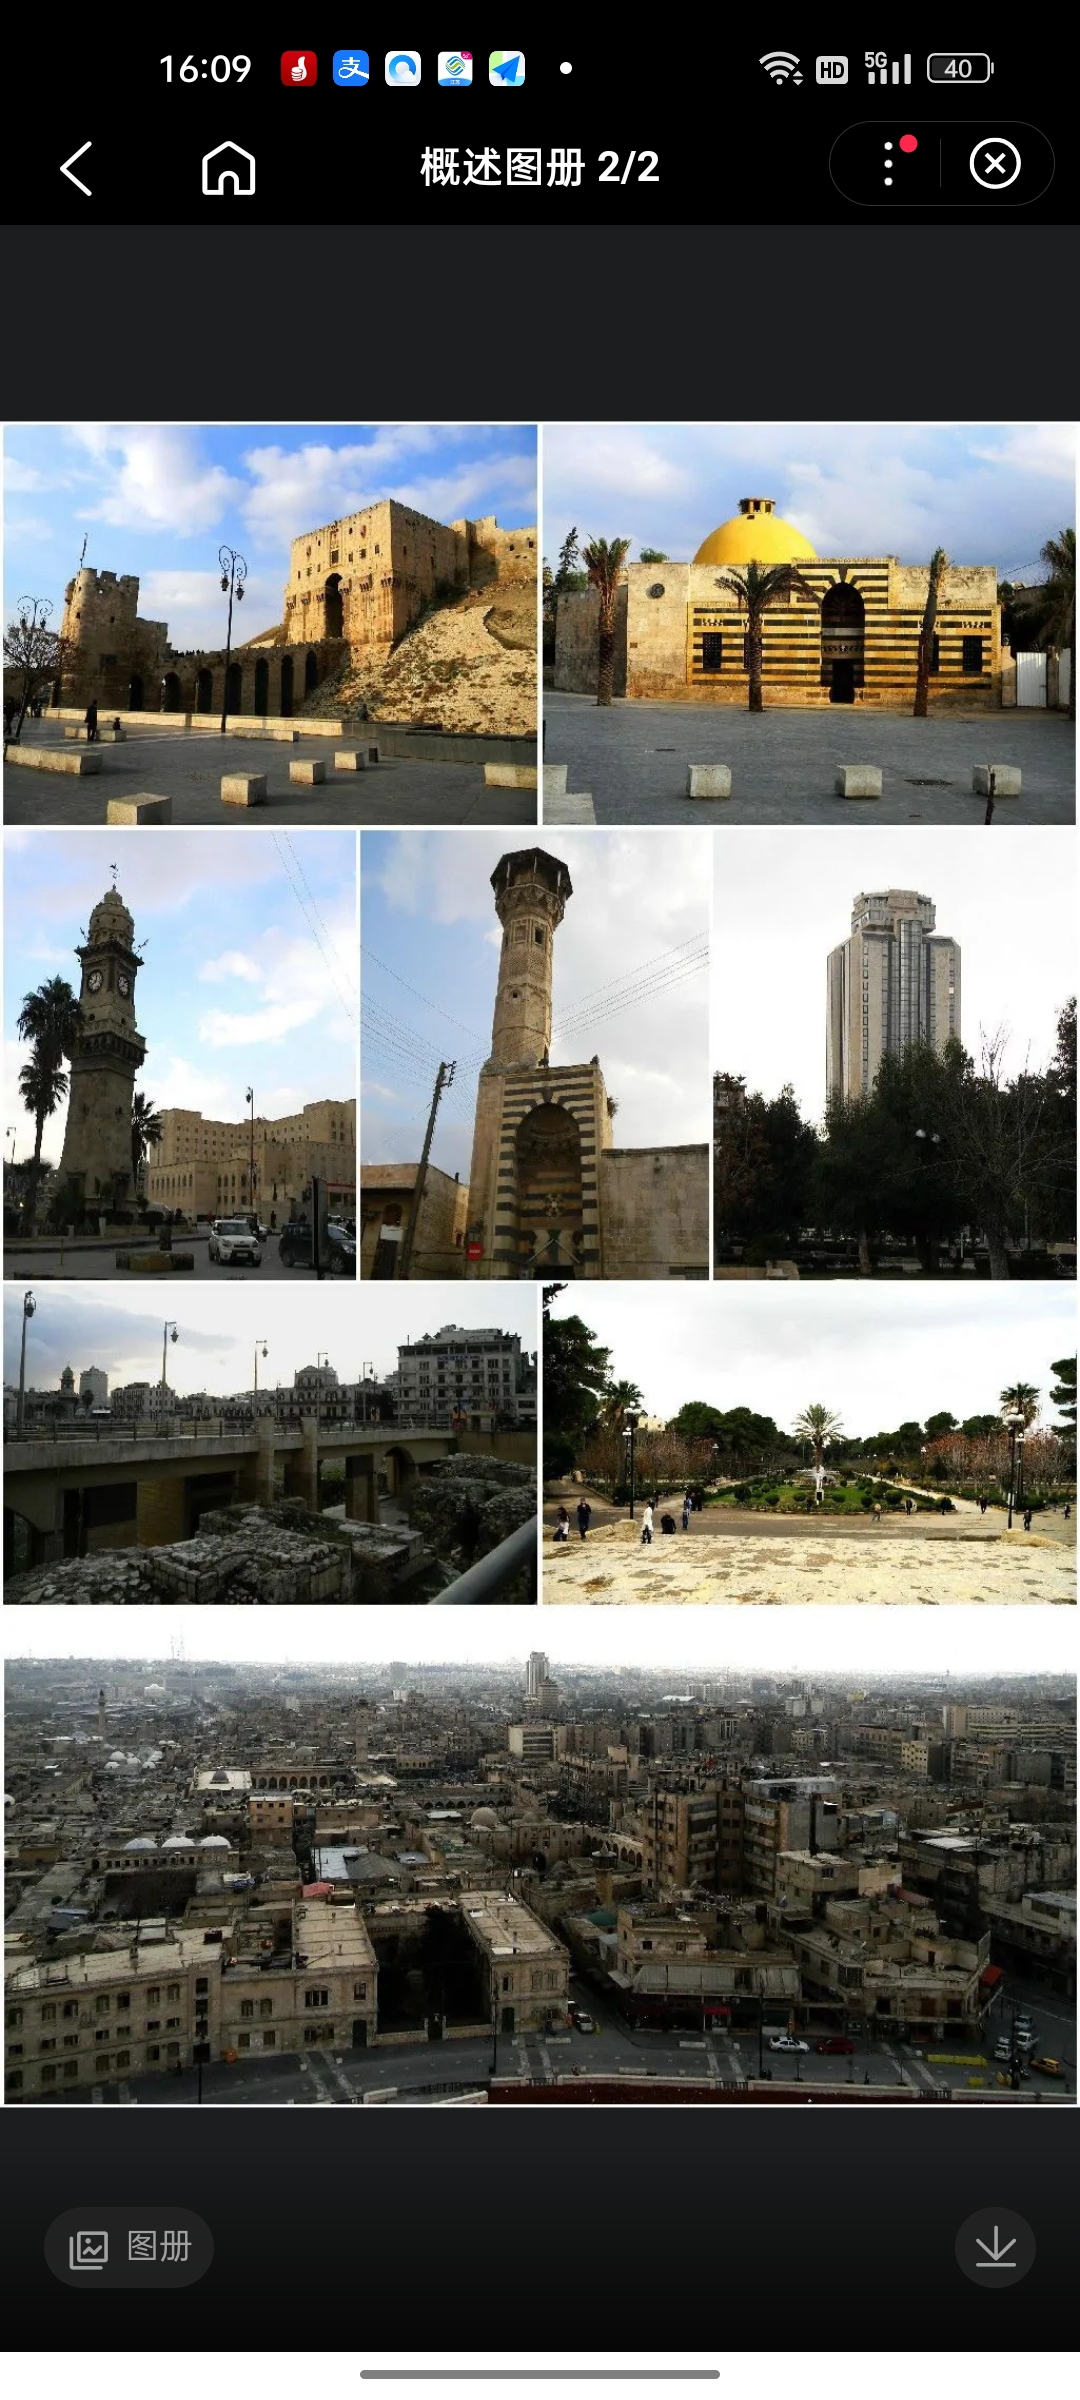 阿勒波位于叙利亚北部、西距地中海120公里，是叙利亚第一大城市，阿勒颇省省会，拥有414万人口。